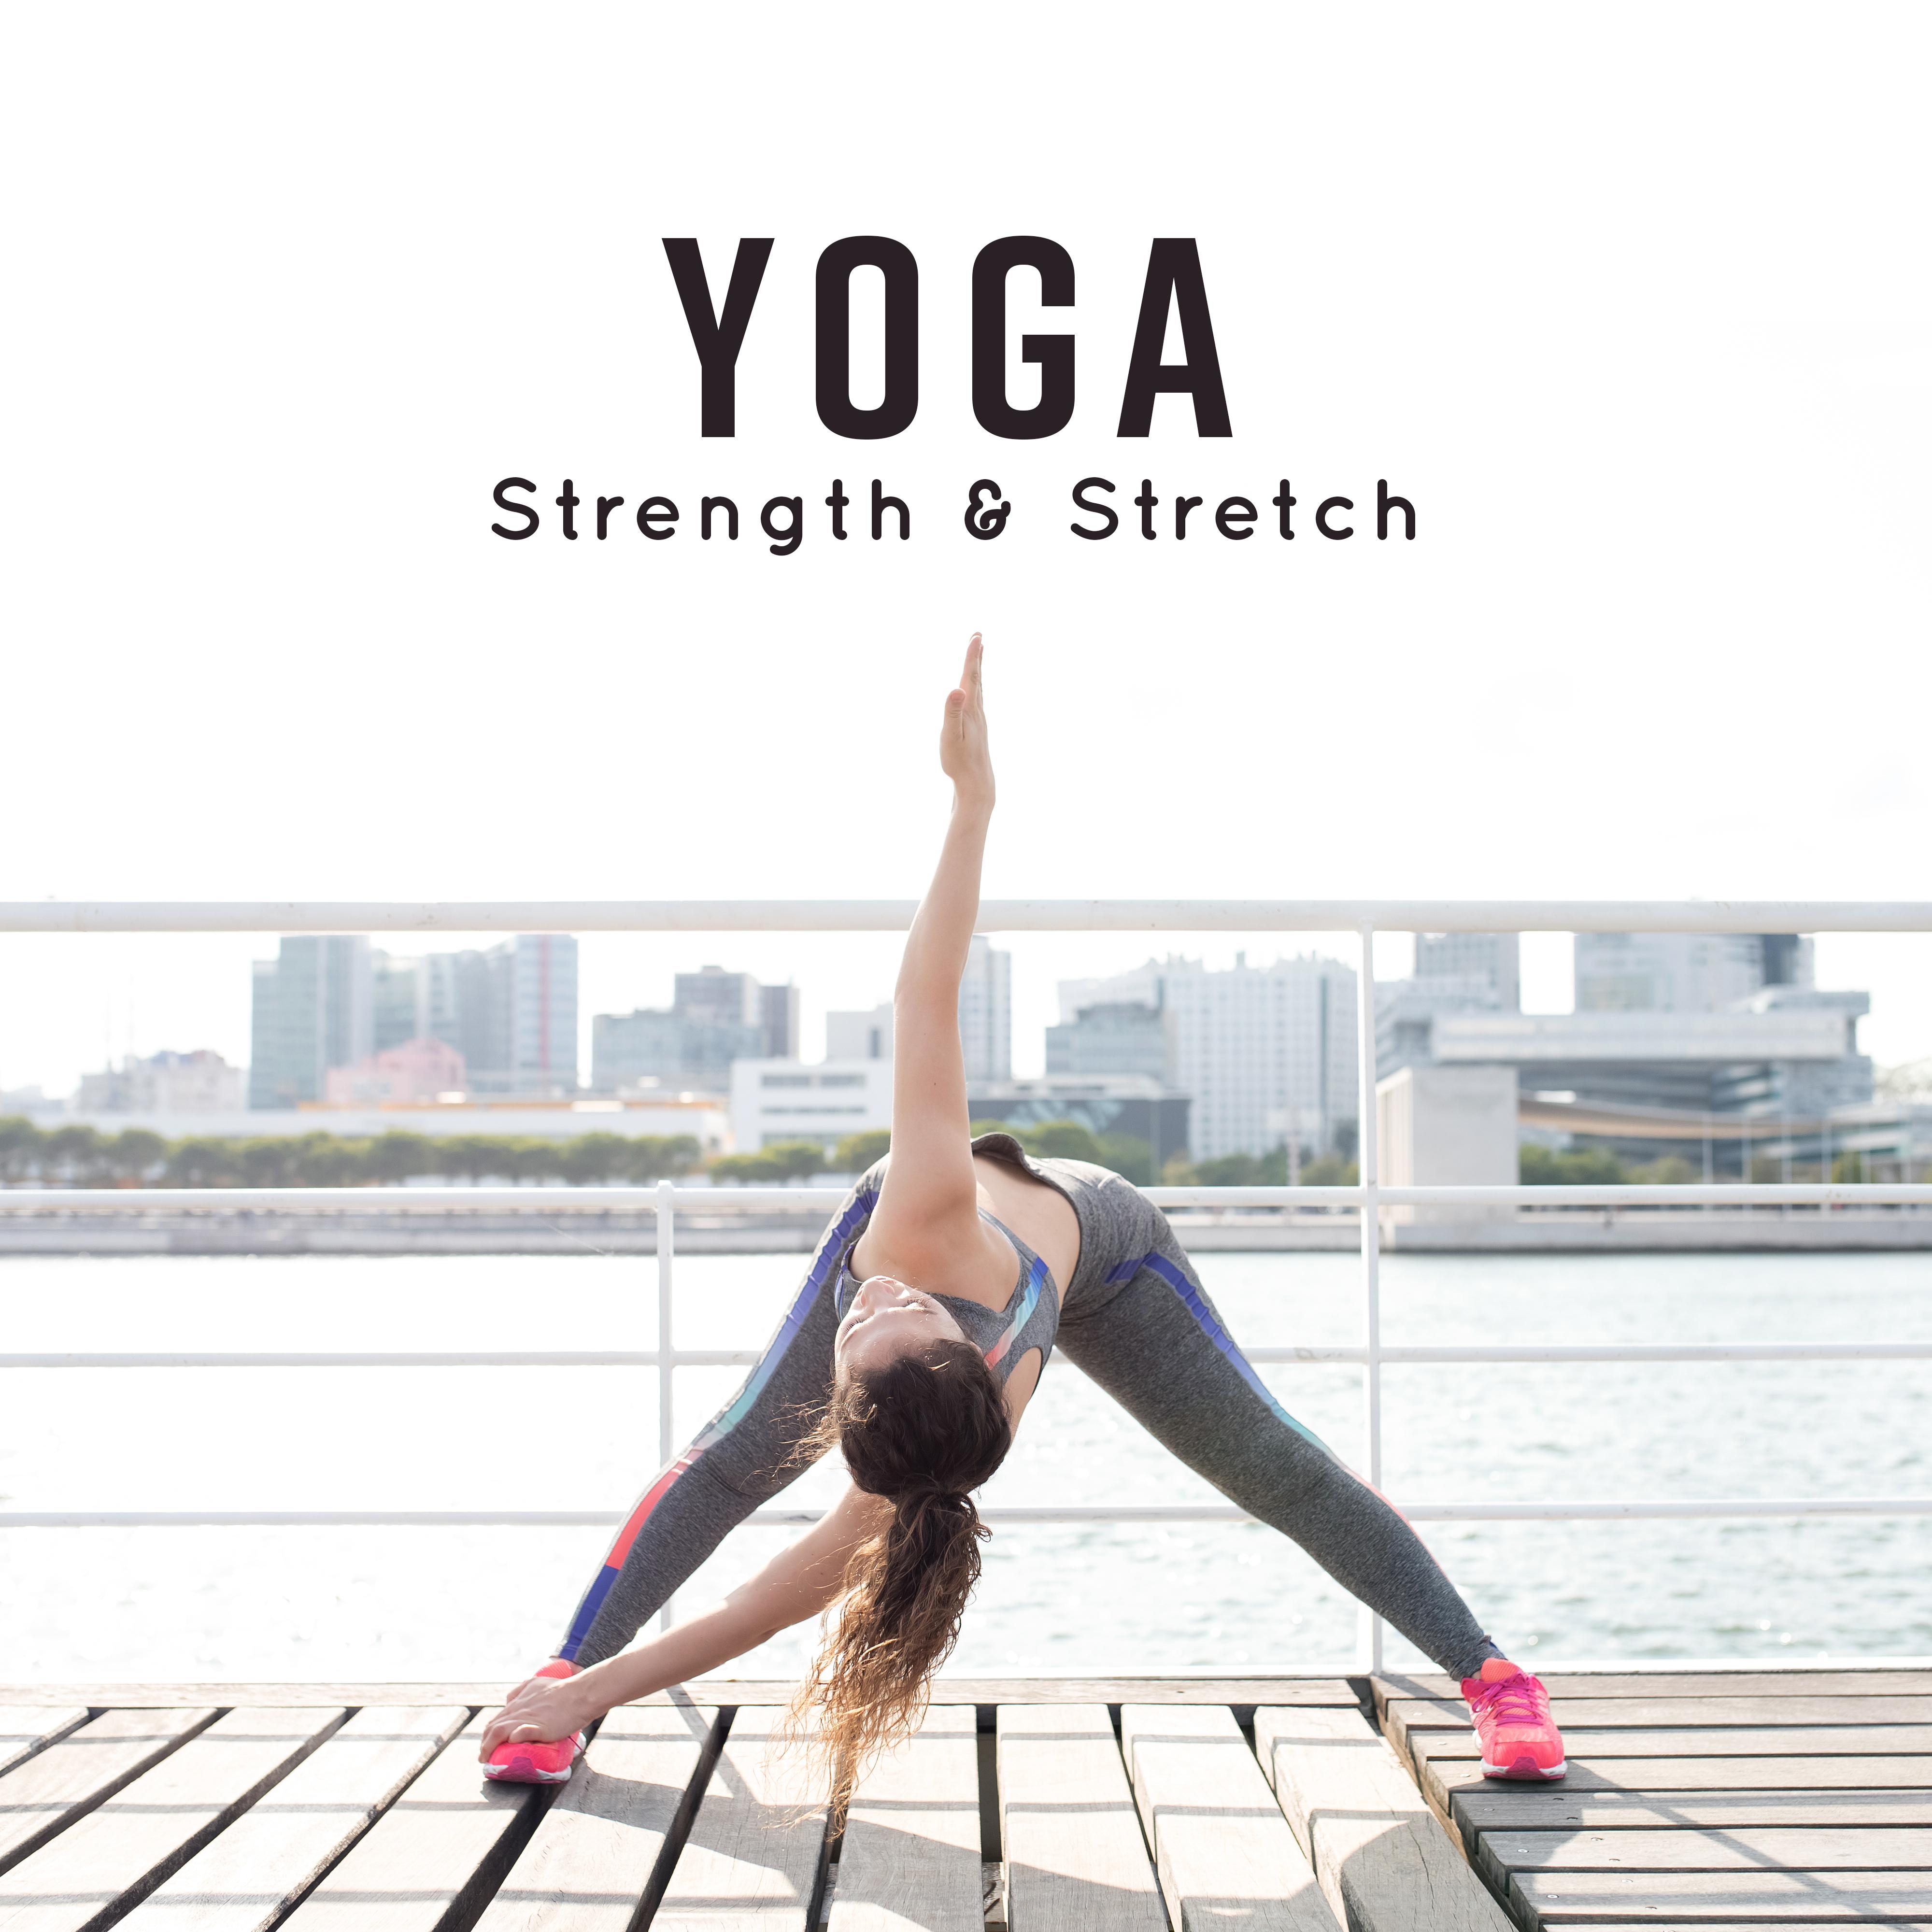 Yoga Strength & Stretch